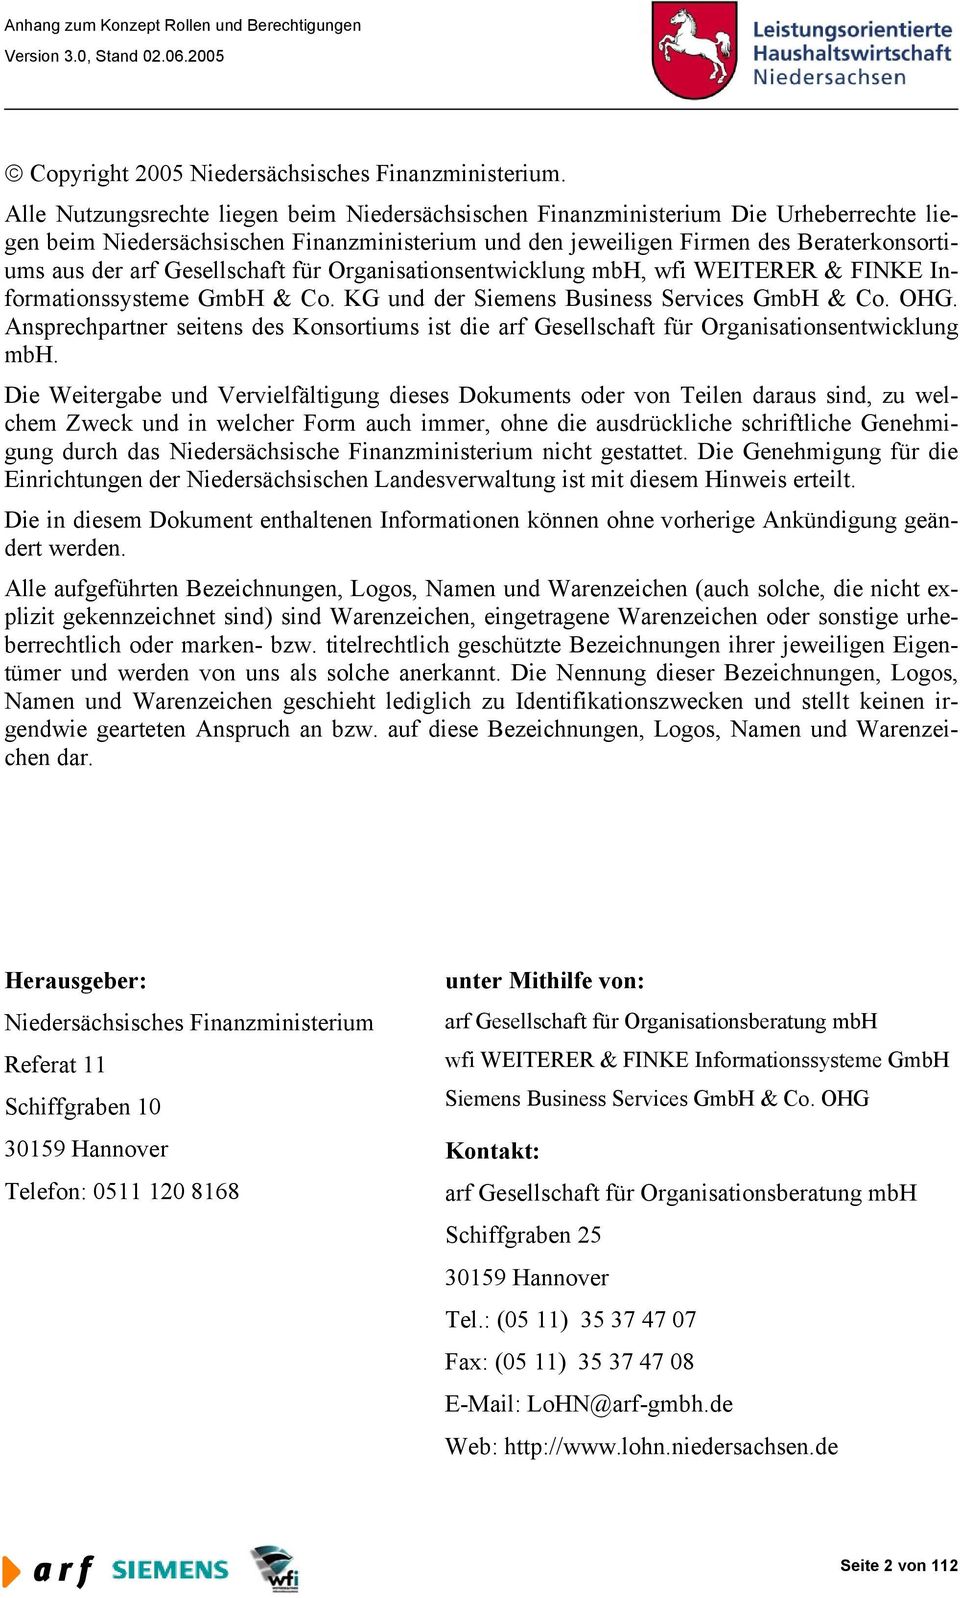 Gesellschaft für Organisationsentwicklung mbh, wfi WEITERER & FINKE Informationssysteme GmbH & Co. KG und der Siemens Business Services GmbH & Co. OHG.